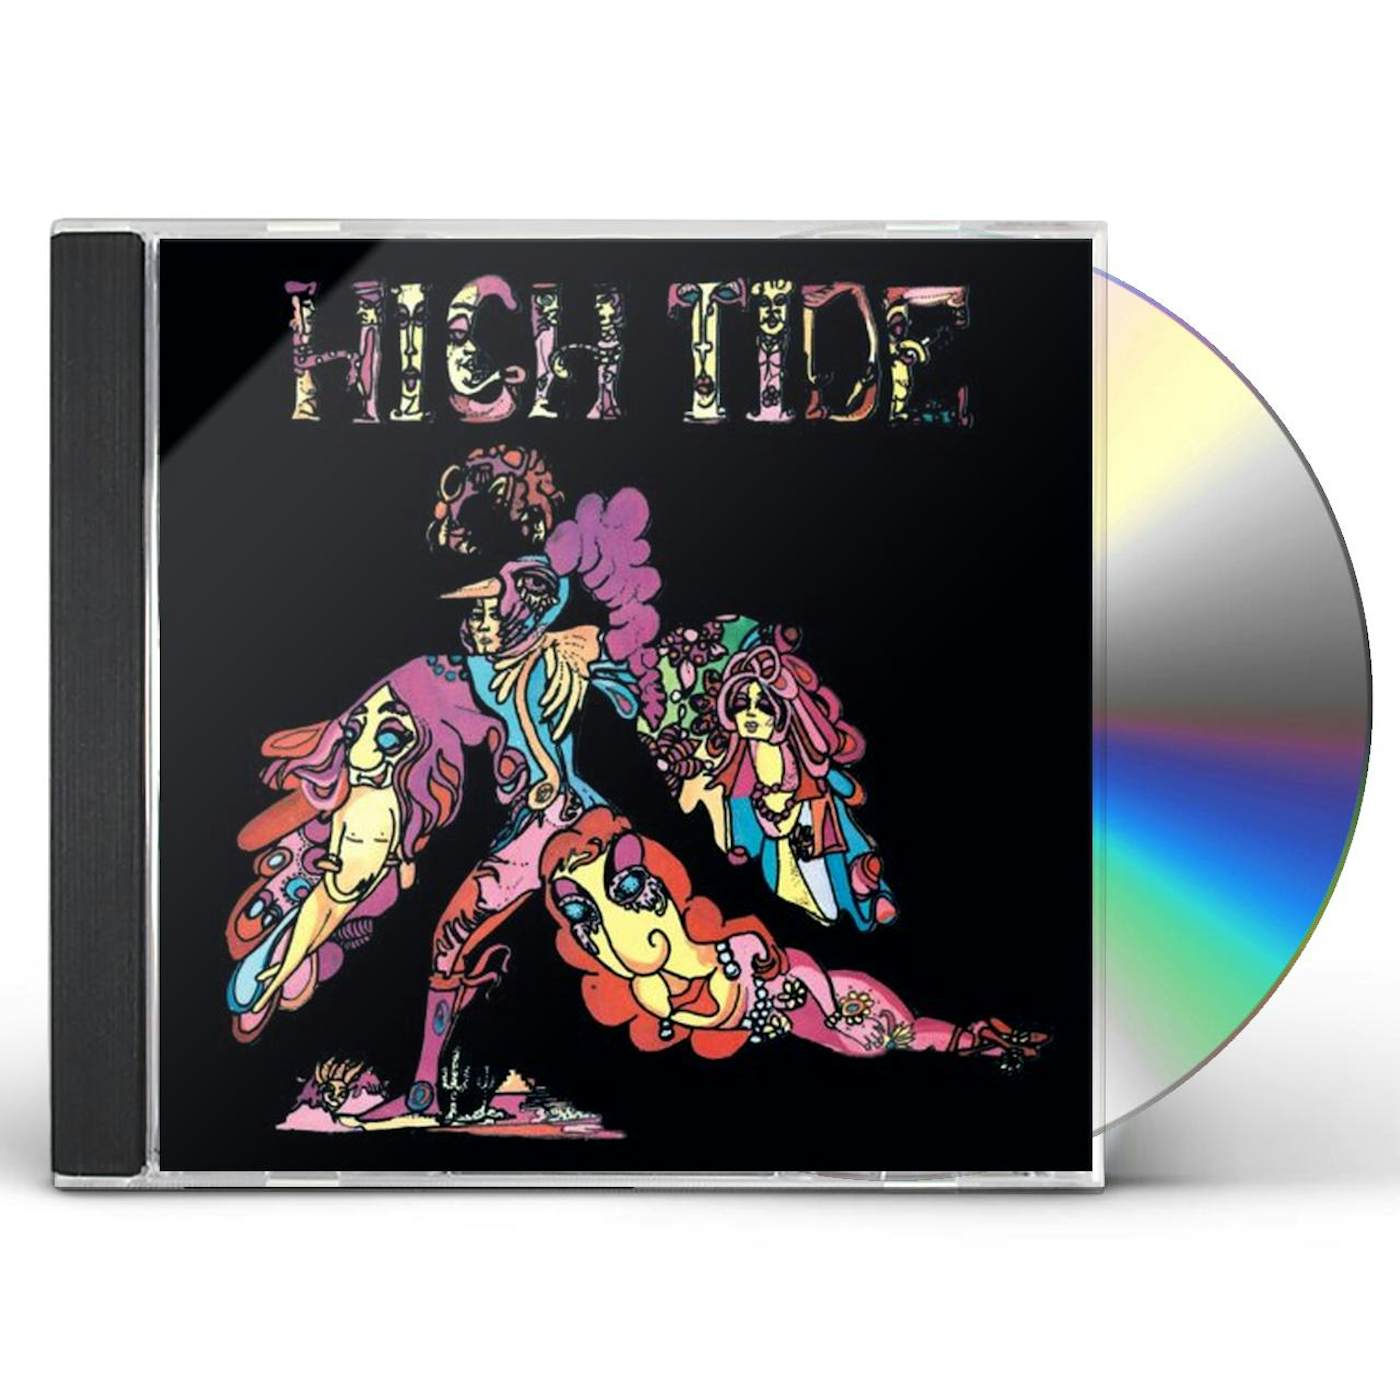 HIGH TIDE CD